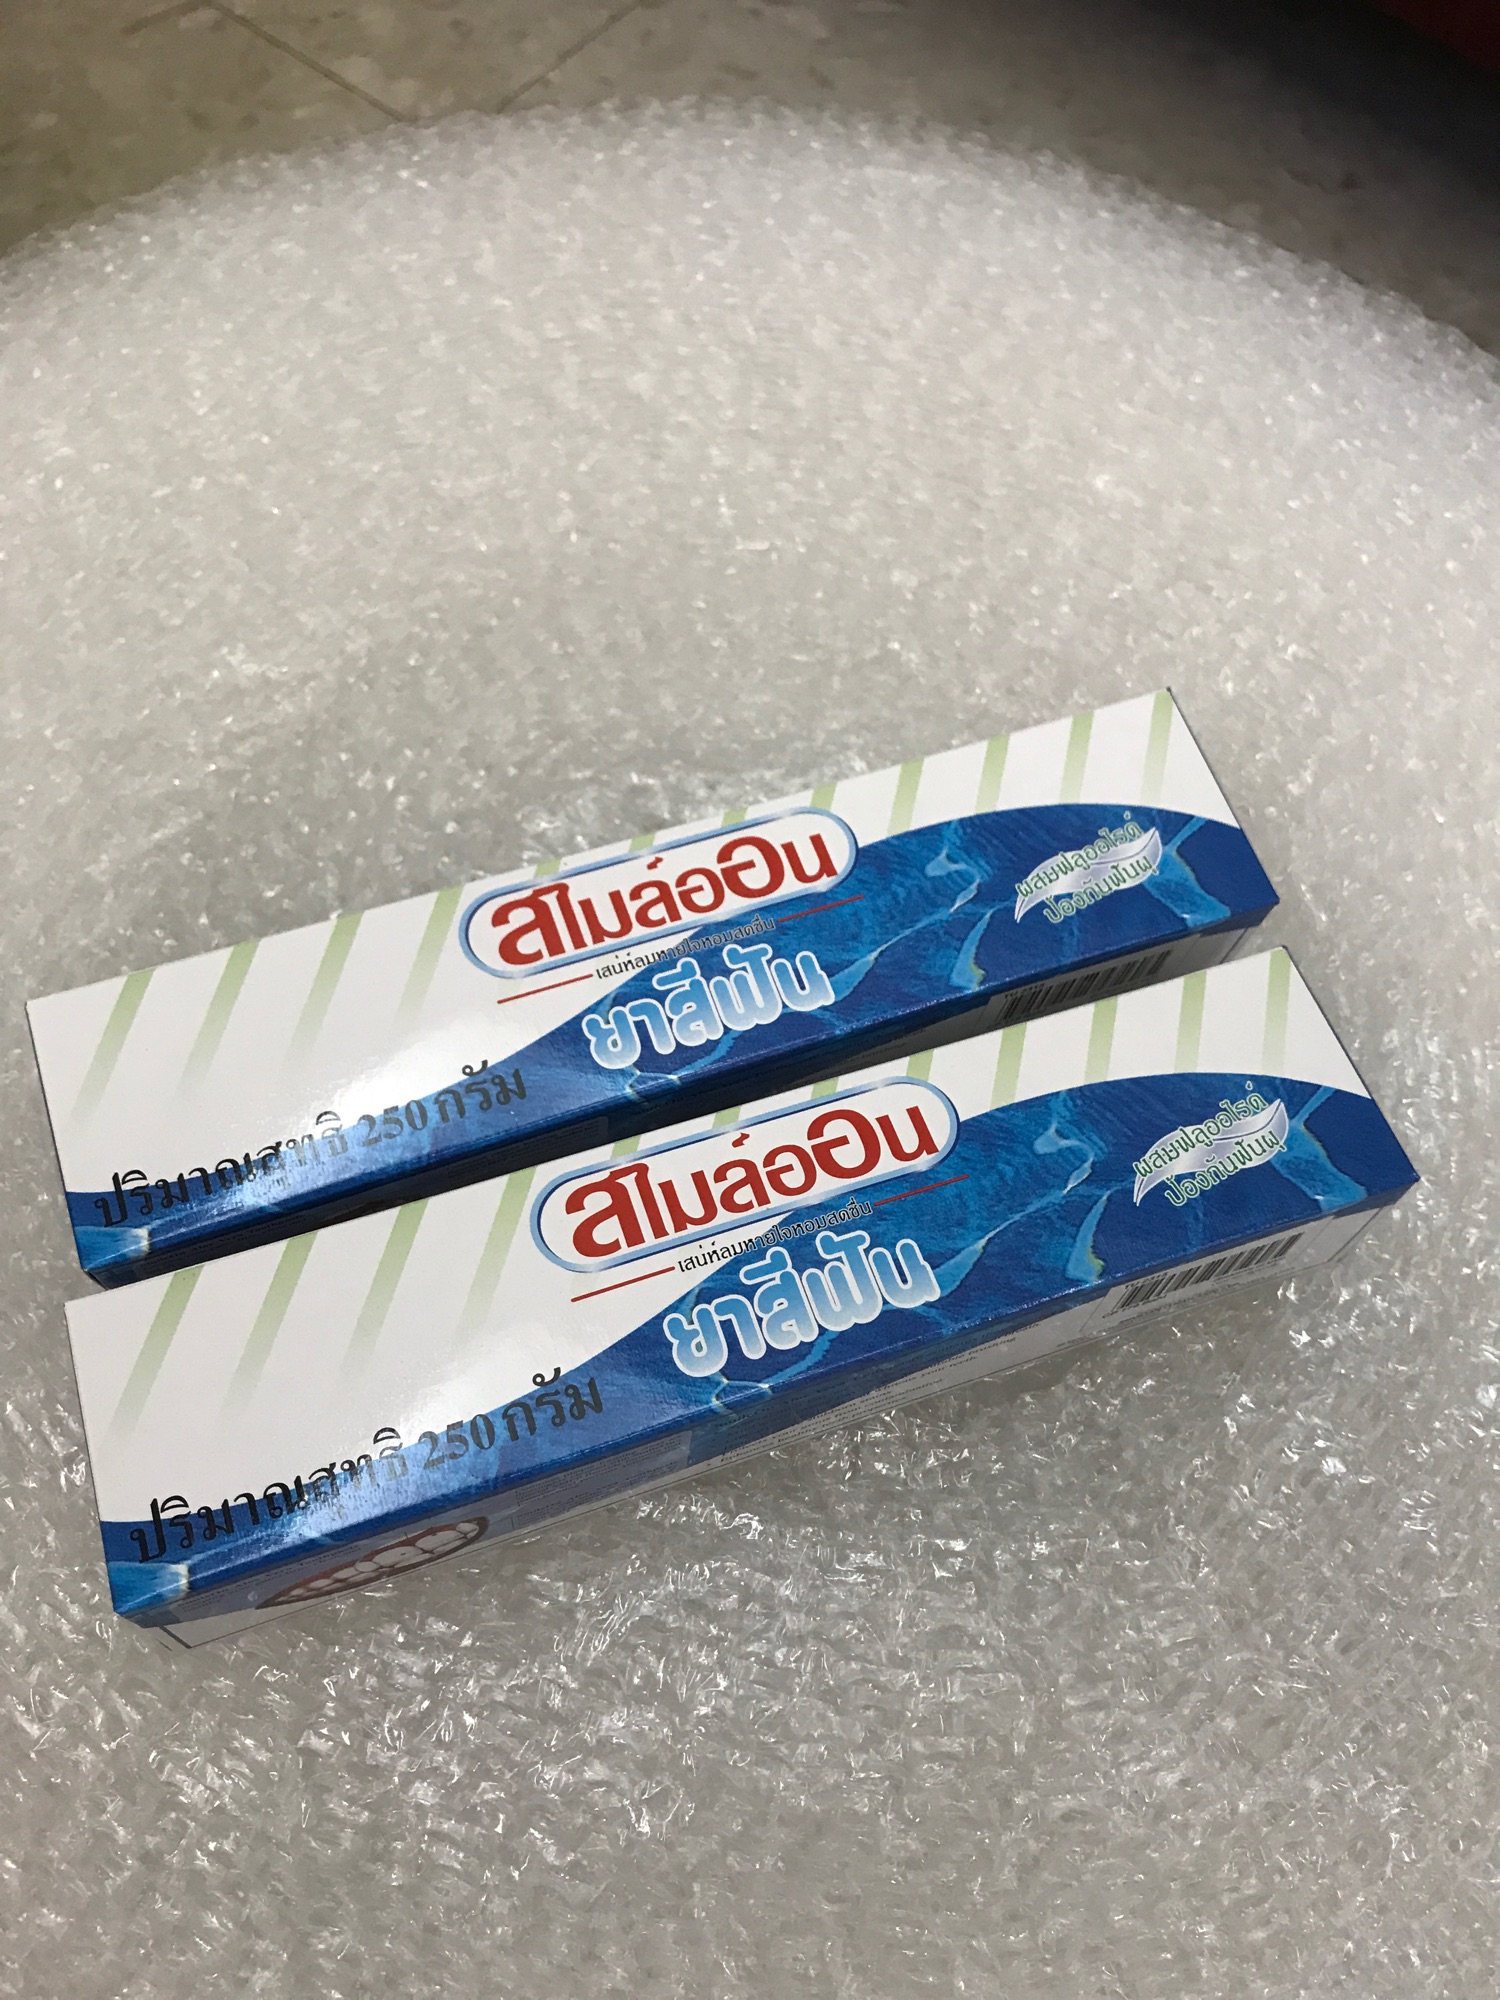 ยาสีฟันซูเลียน250ml2หลอดราคา258บาท (สั่ง3หลอดใน1บิล รับกาแฟชงชิมฟรี1ซอง)